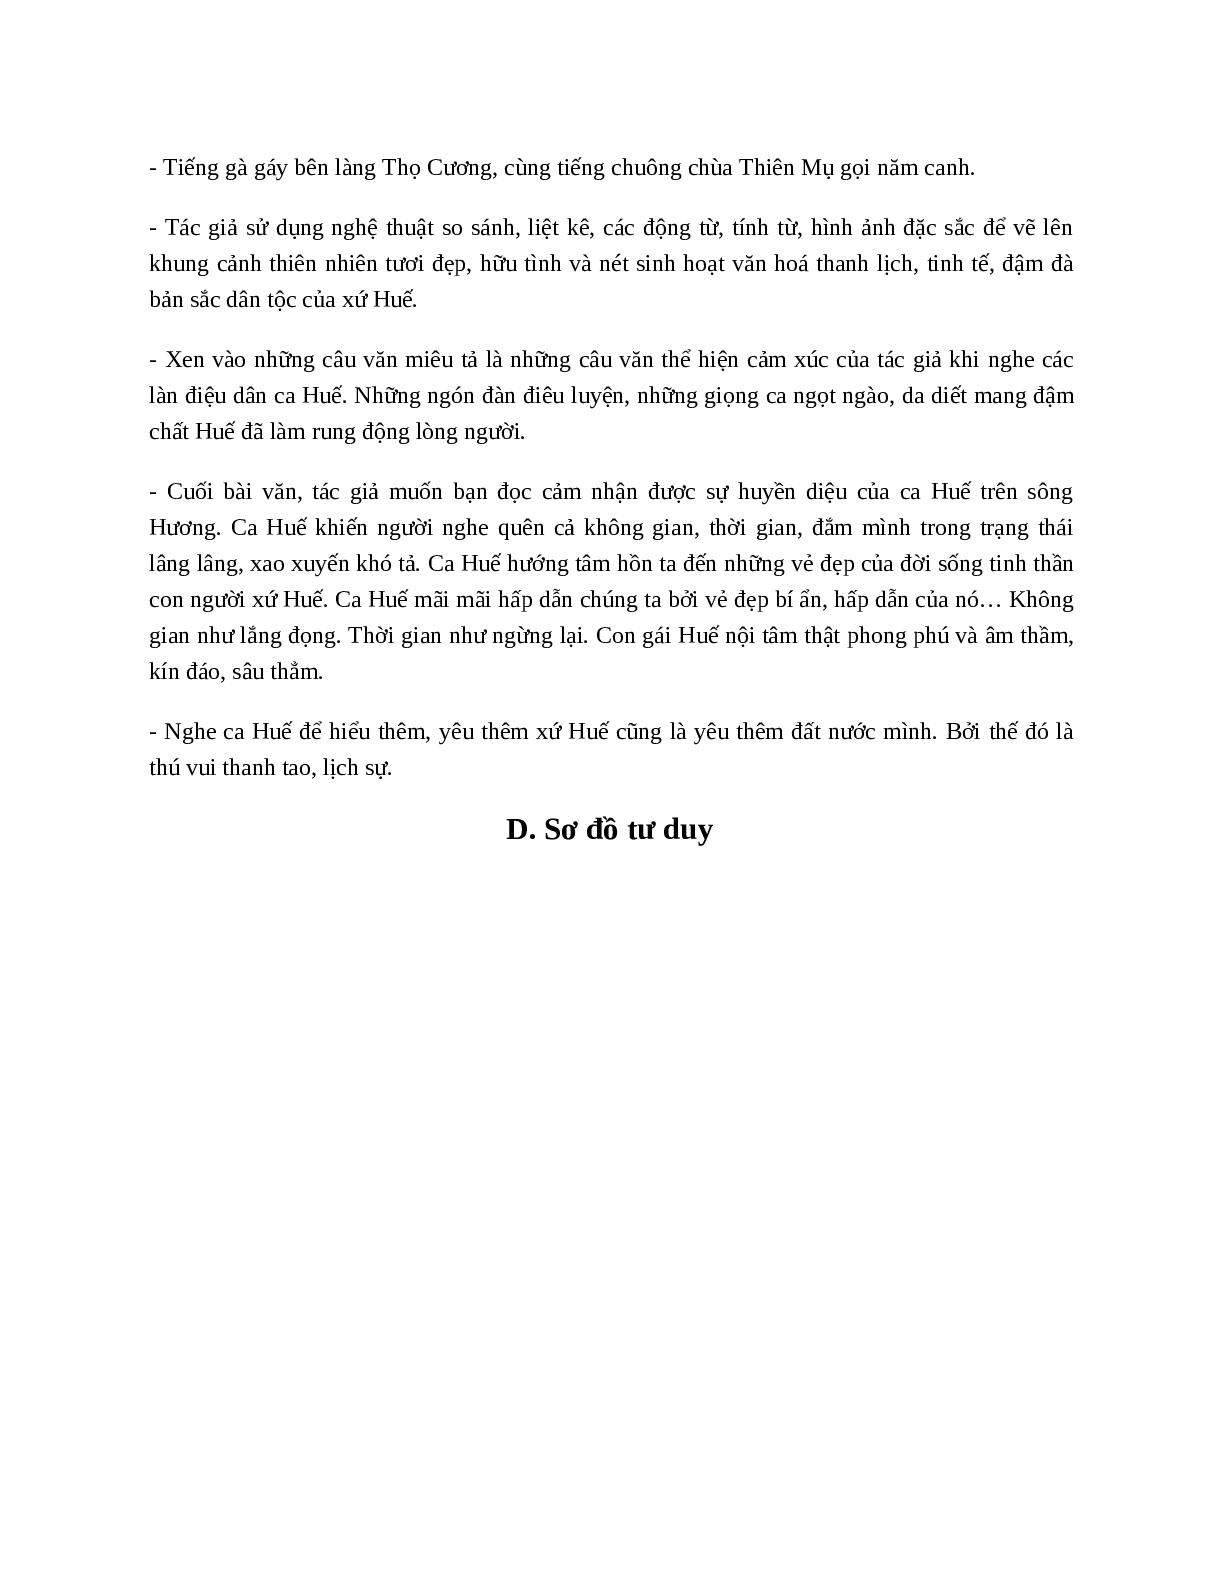 Ca Huế trên sông Hương - Tác giả tác phẩm - Ngữ văn lớp 7 (trang 4)